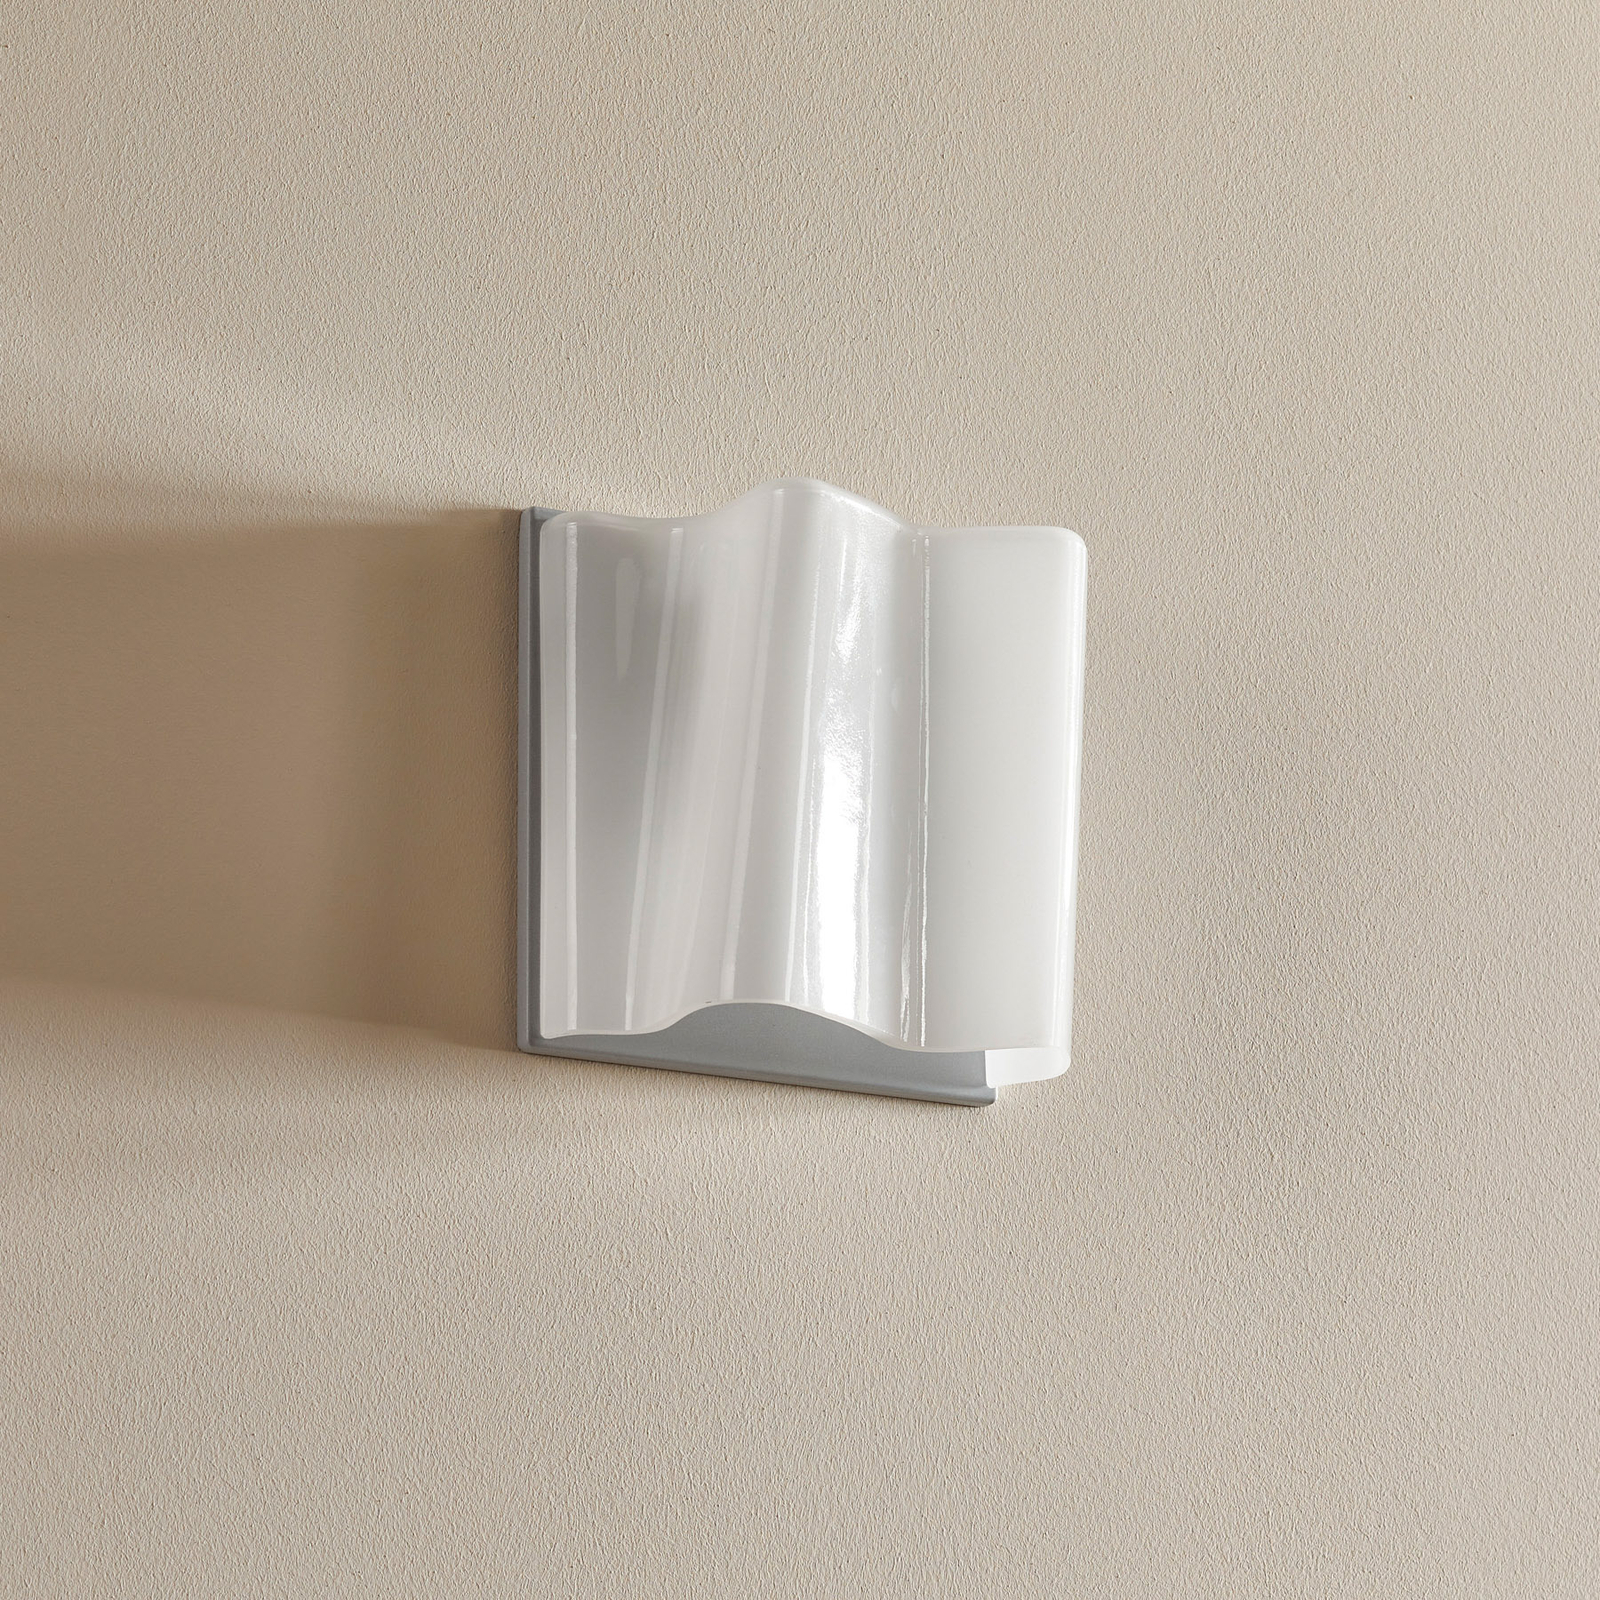 Artemide Logico micro wall light width 18.9 cm